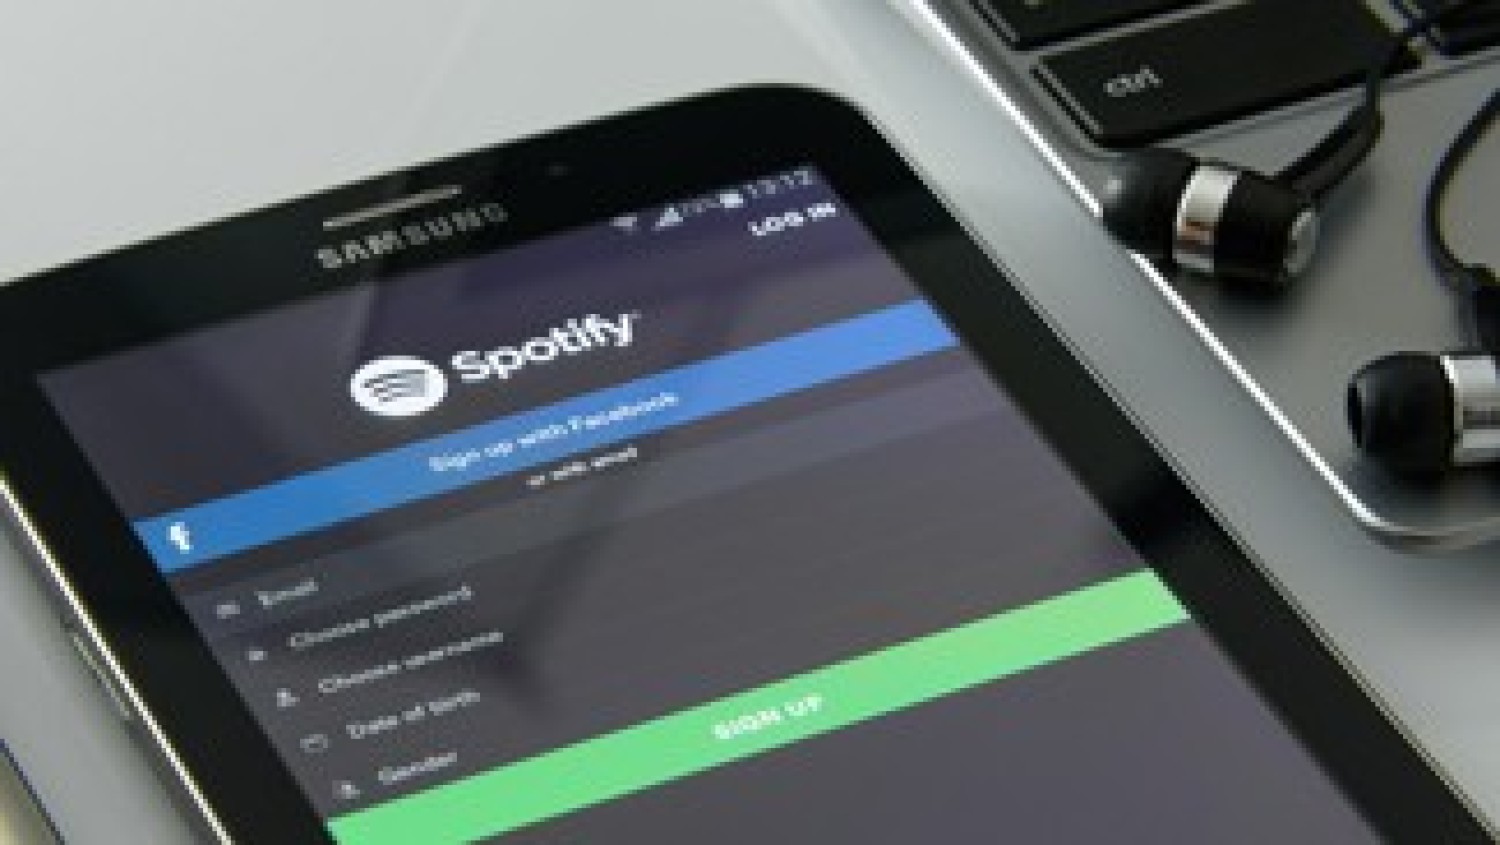 Party nieuws: Zelf muziek uploaden via Spotify!